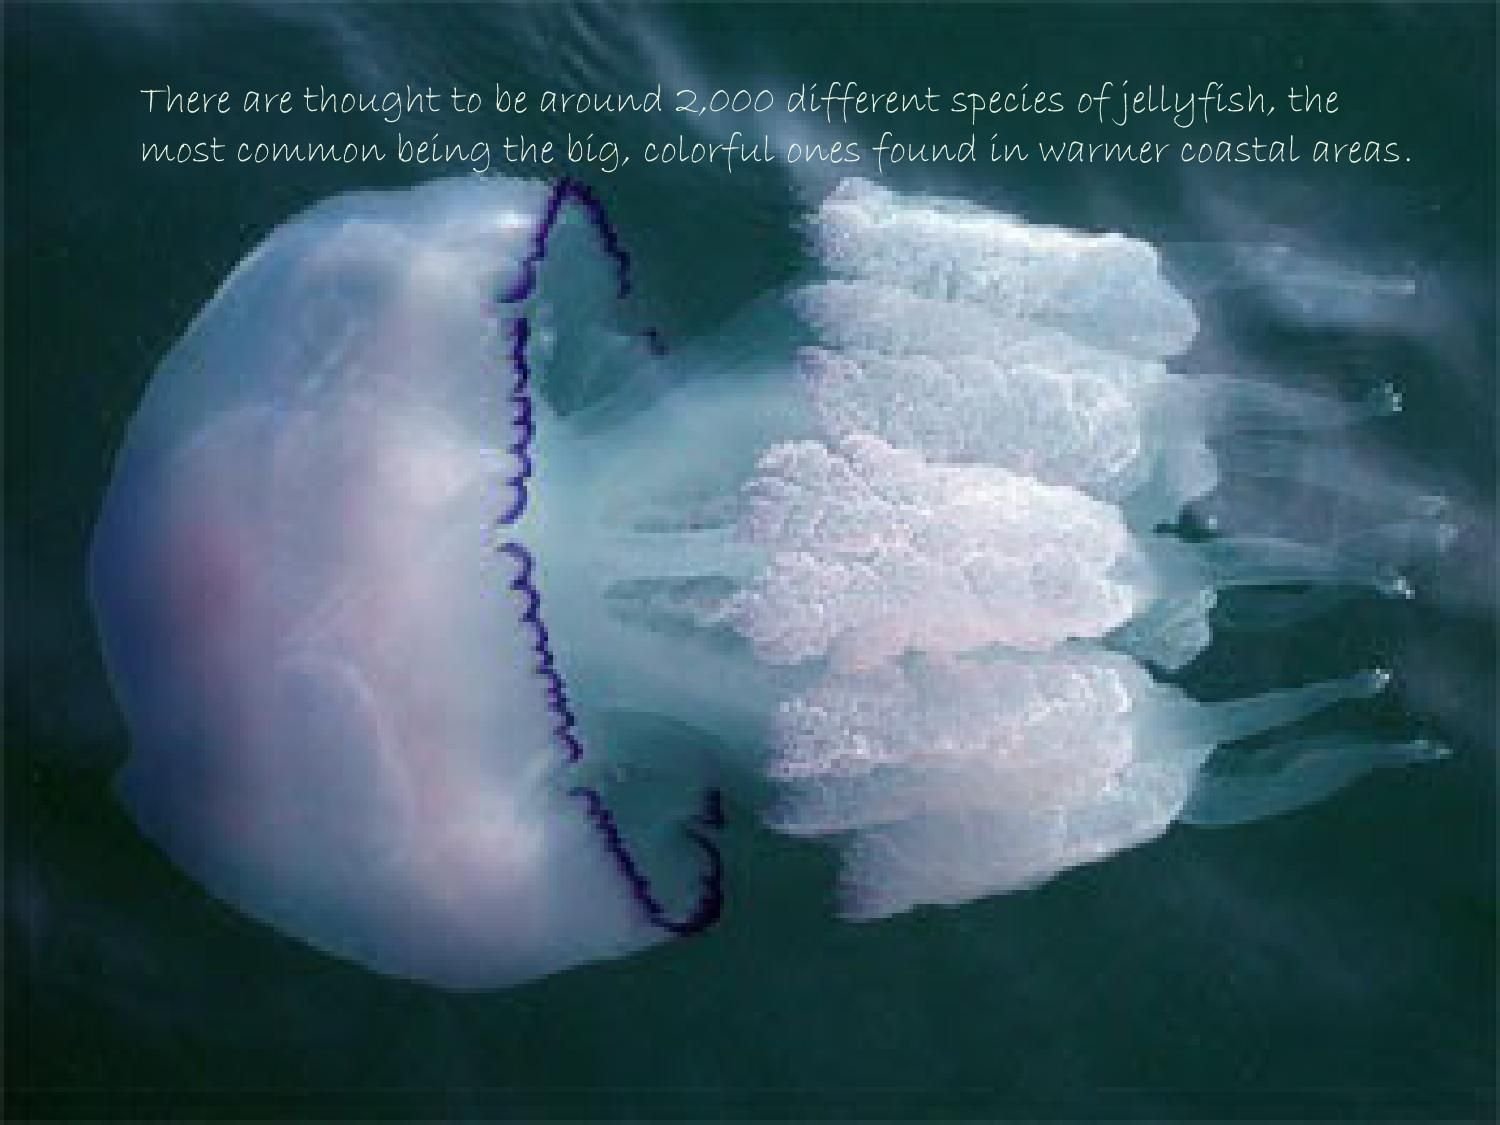 фиолетовая медуза в черном море